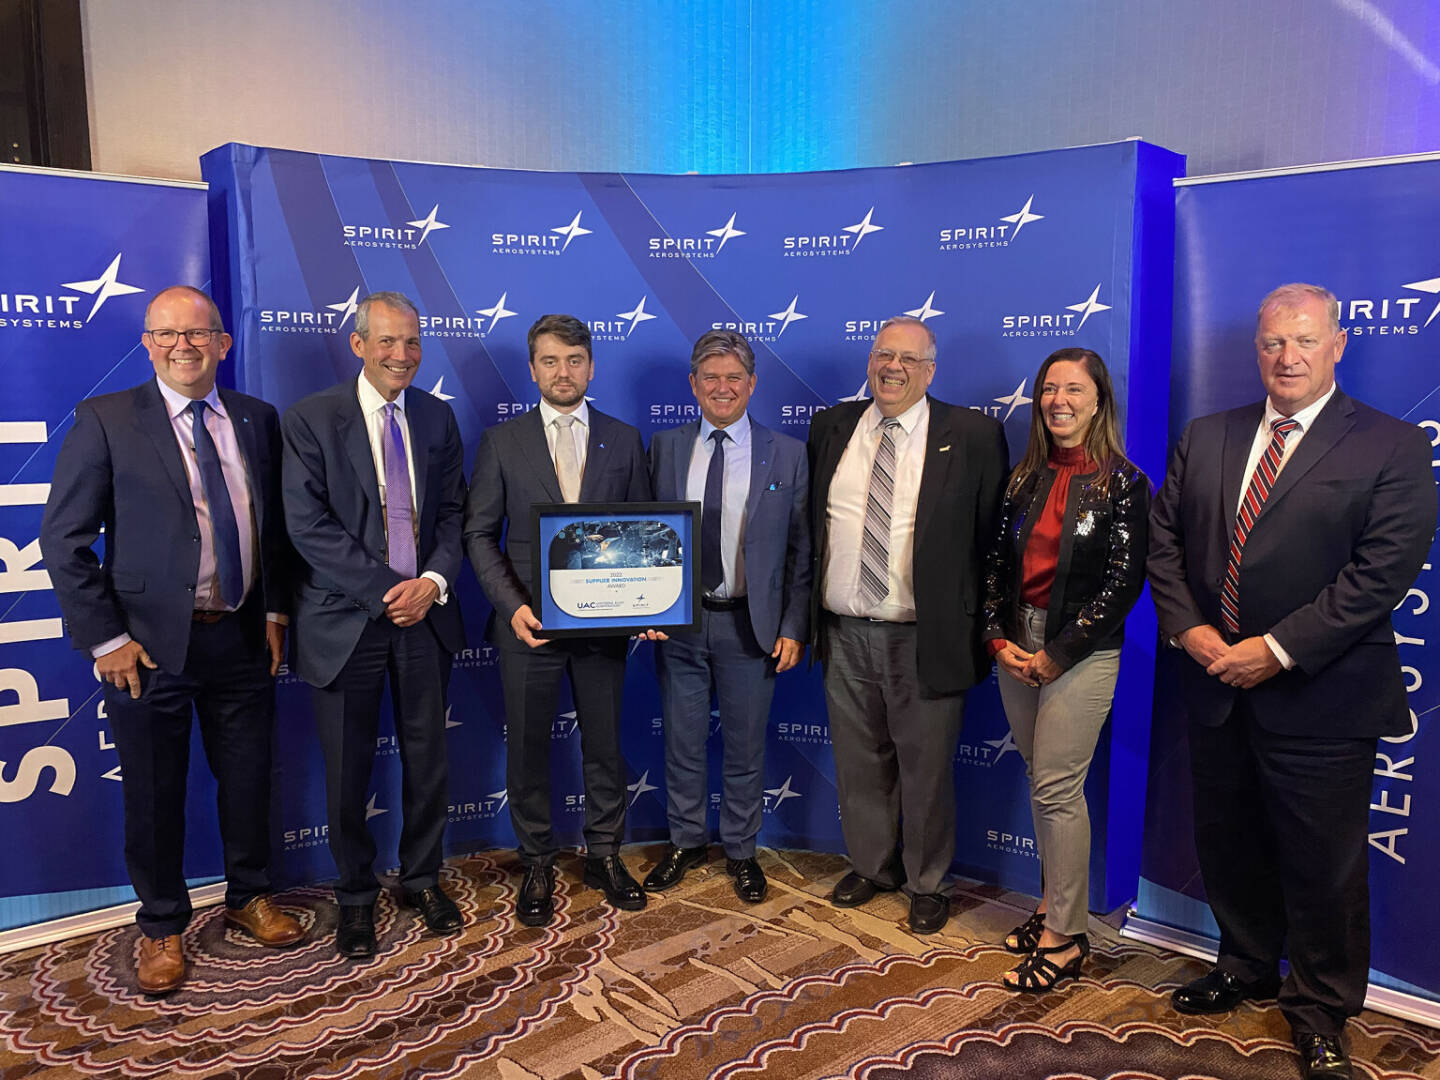 Die zu Montana Aerospace gehörende Universal Alloy Corporation (UAC) erhielt den renommierten Spirit Award. Credit: Montana Aerospace